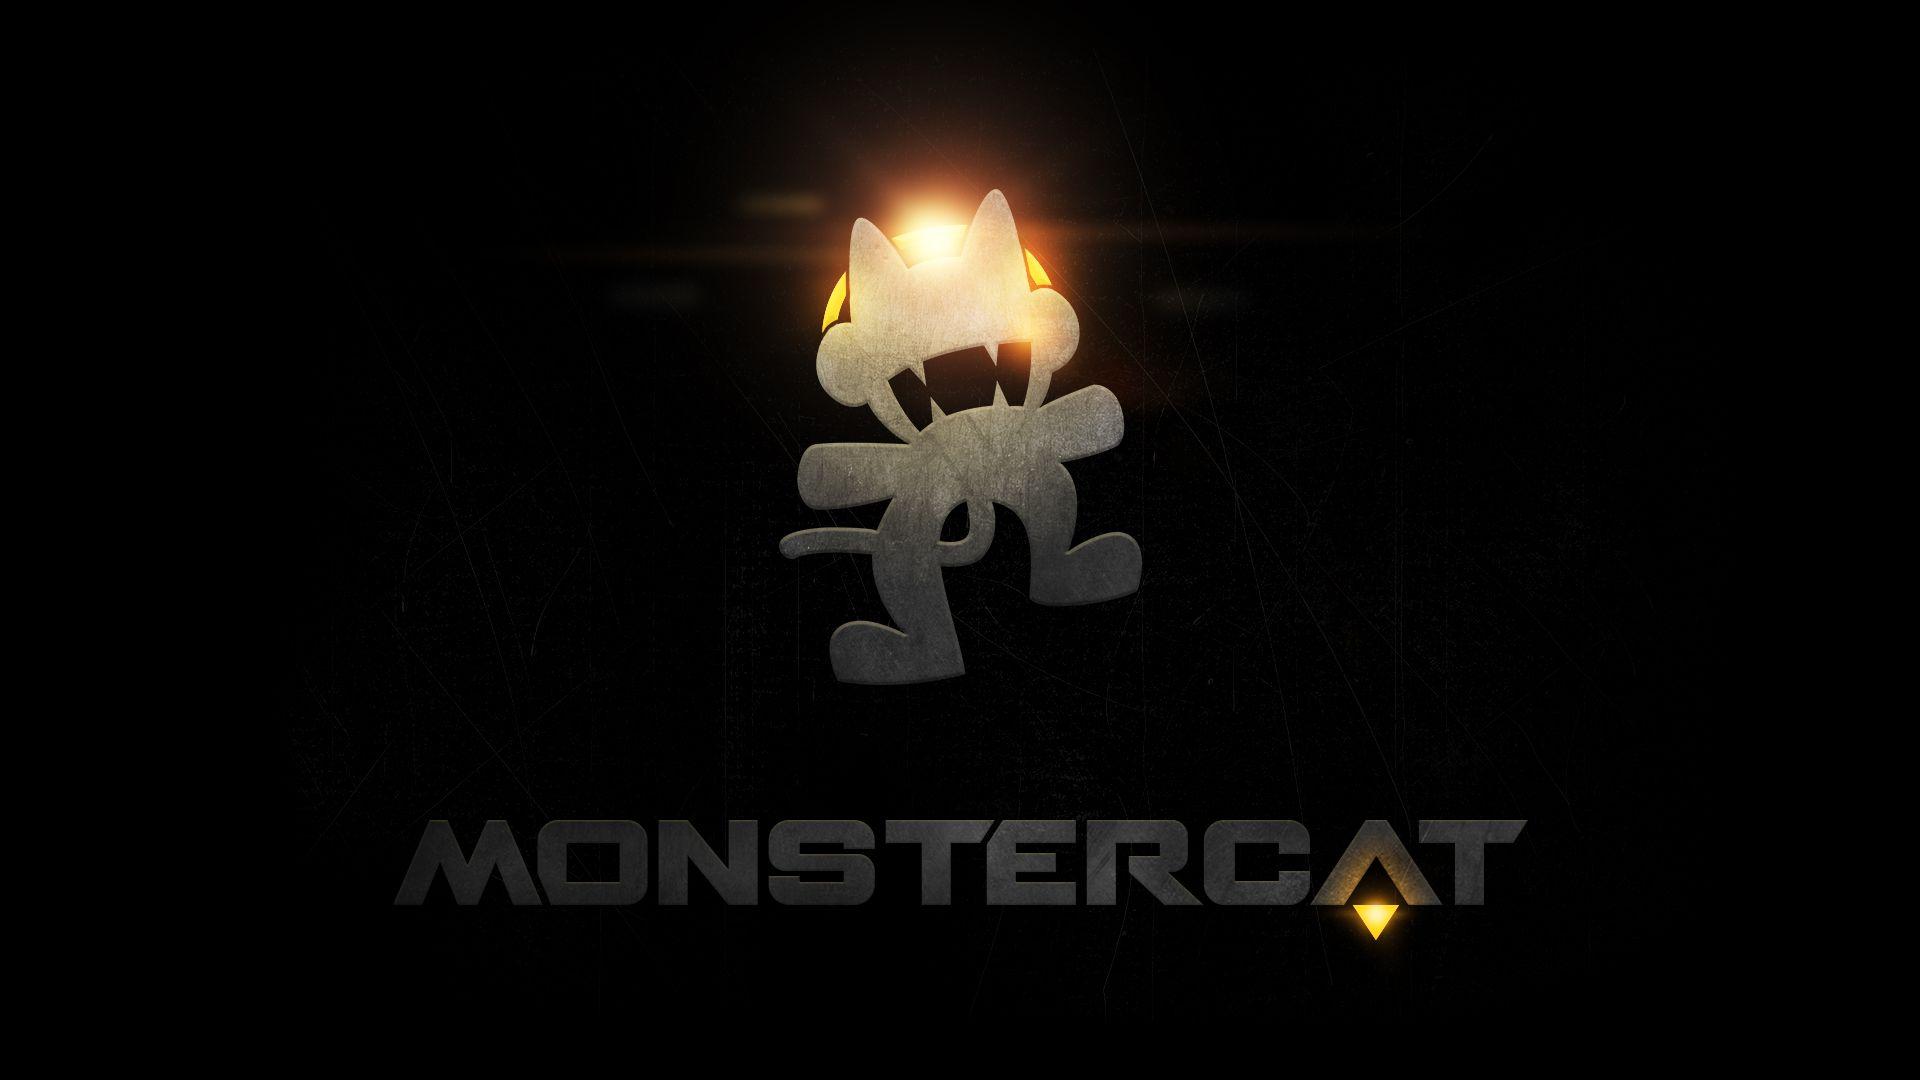 Wallpaper On Monstercat Media